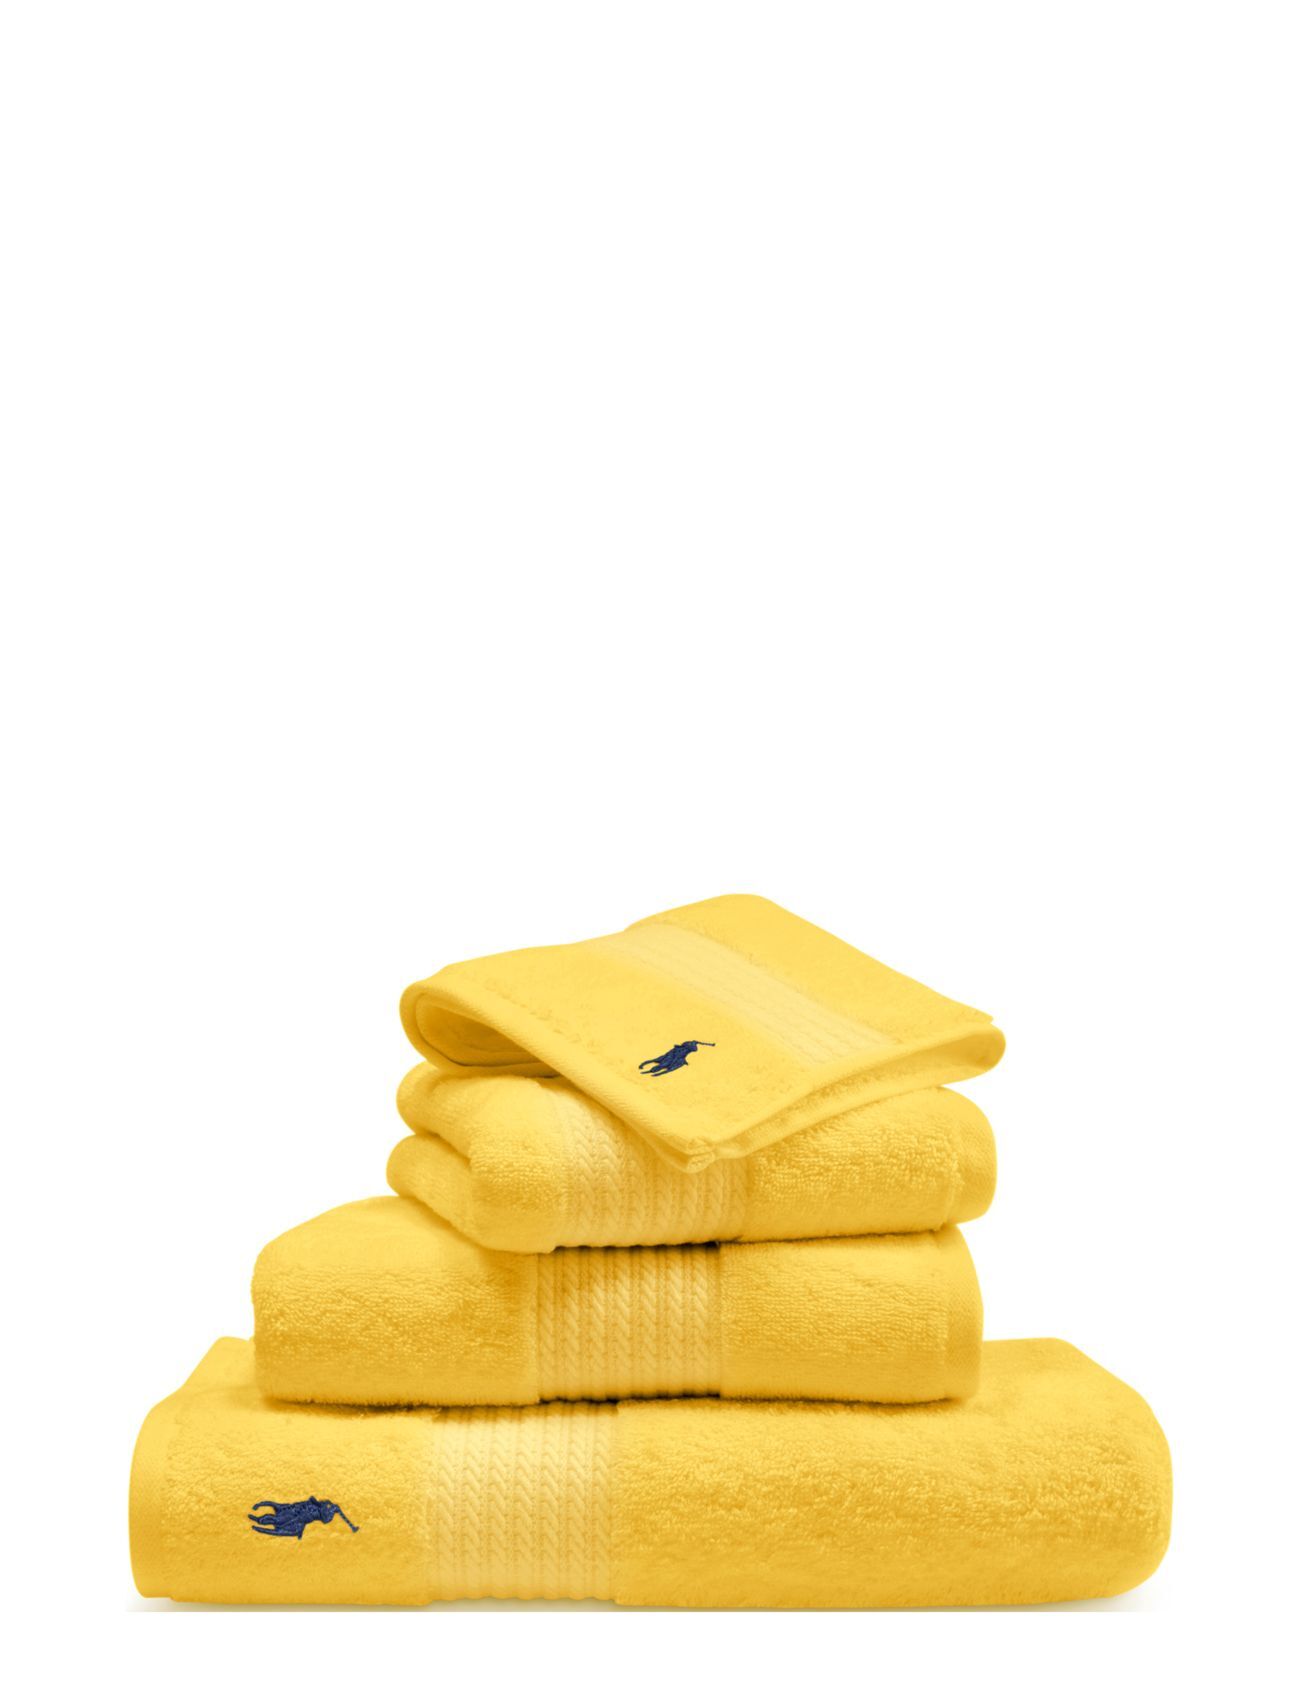 Ralph Lauren Home Player Wash Towel Home Textiles Bathroom Textiles Towels Gul Ralph Lauren Home